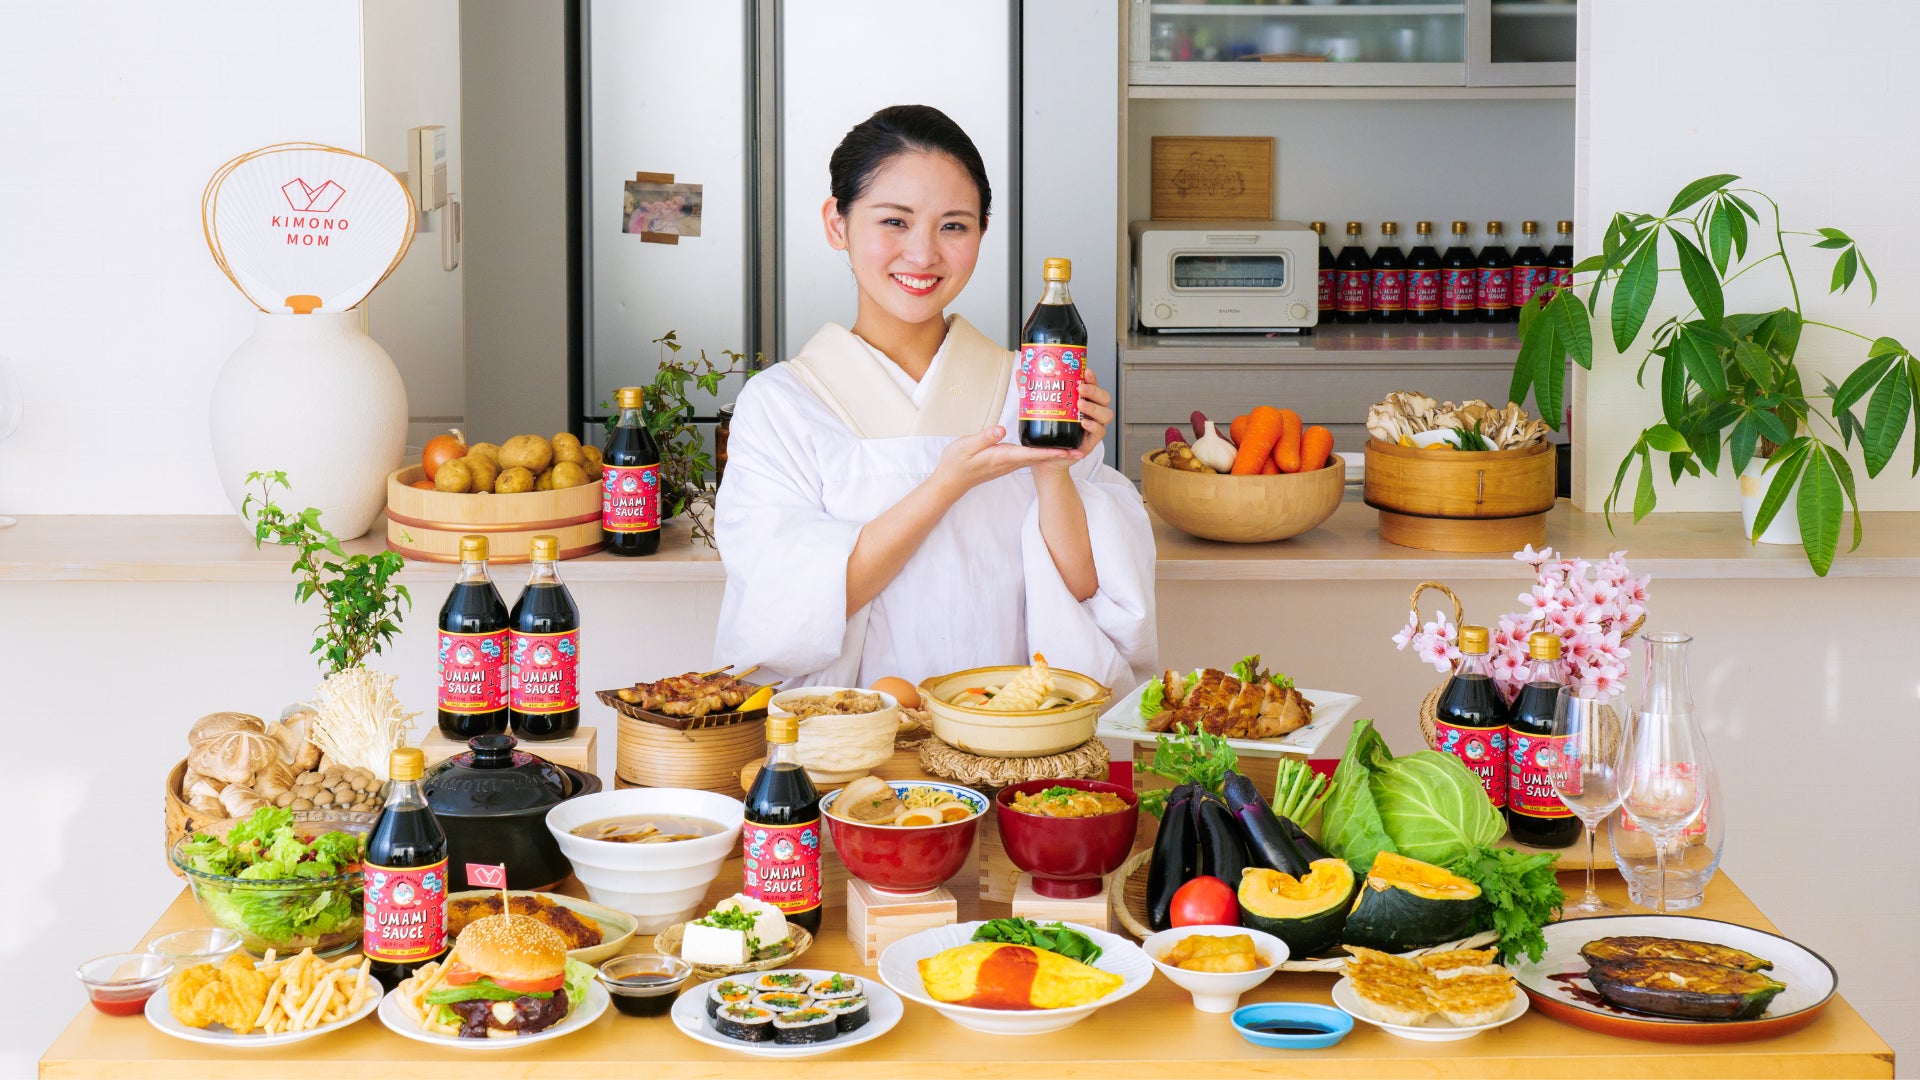 日本の家庭の味を世界に広める！主婦インフルエンサー Kimono Mom 開発の調味料が全米展開のスーパーに採択。店舗を回る全米横断ツアーのクラウドファンディングが500万円突破。